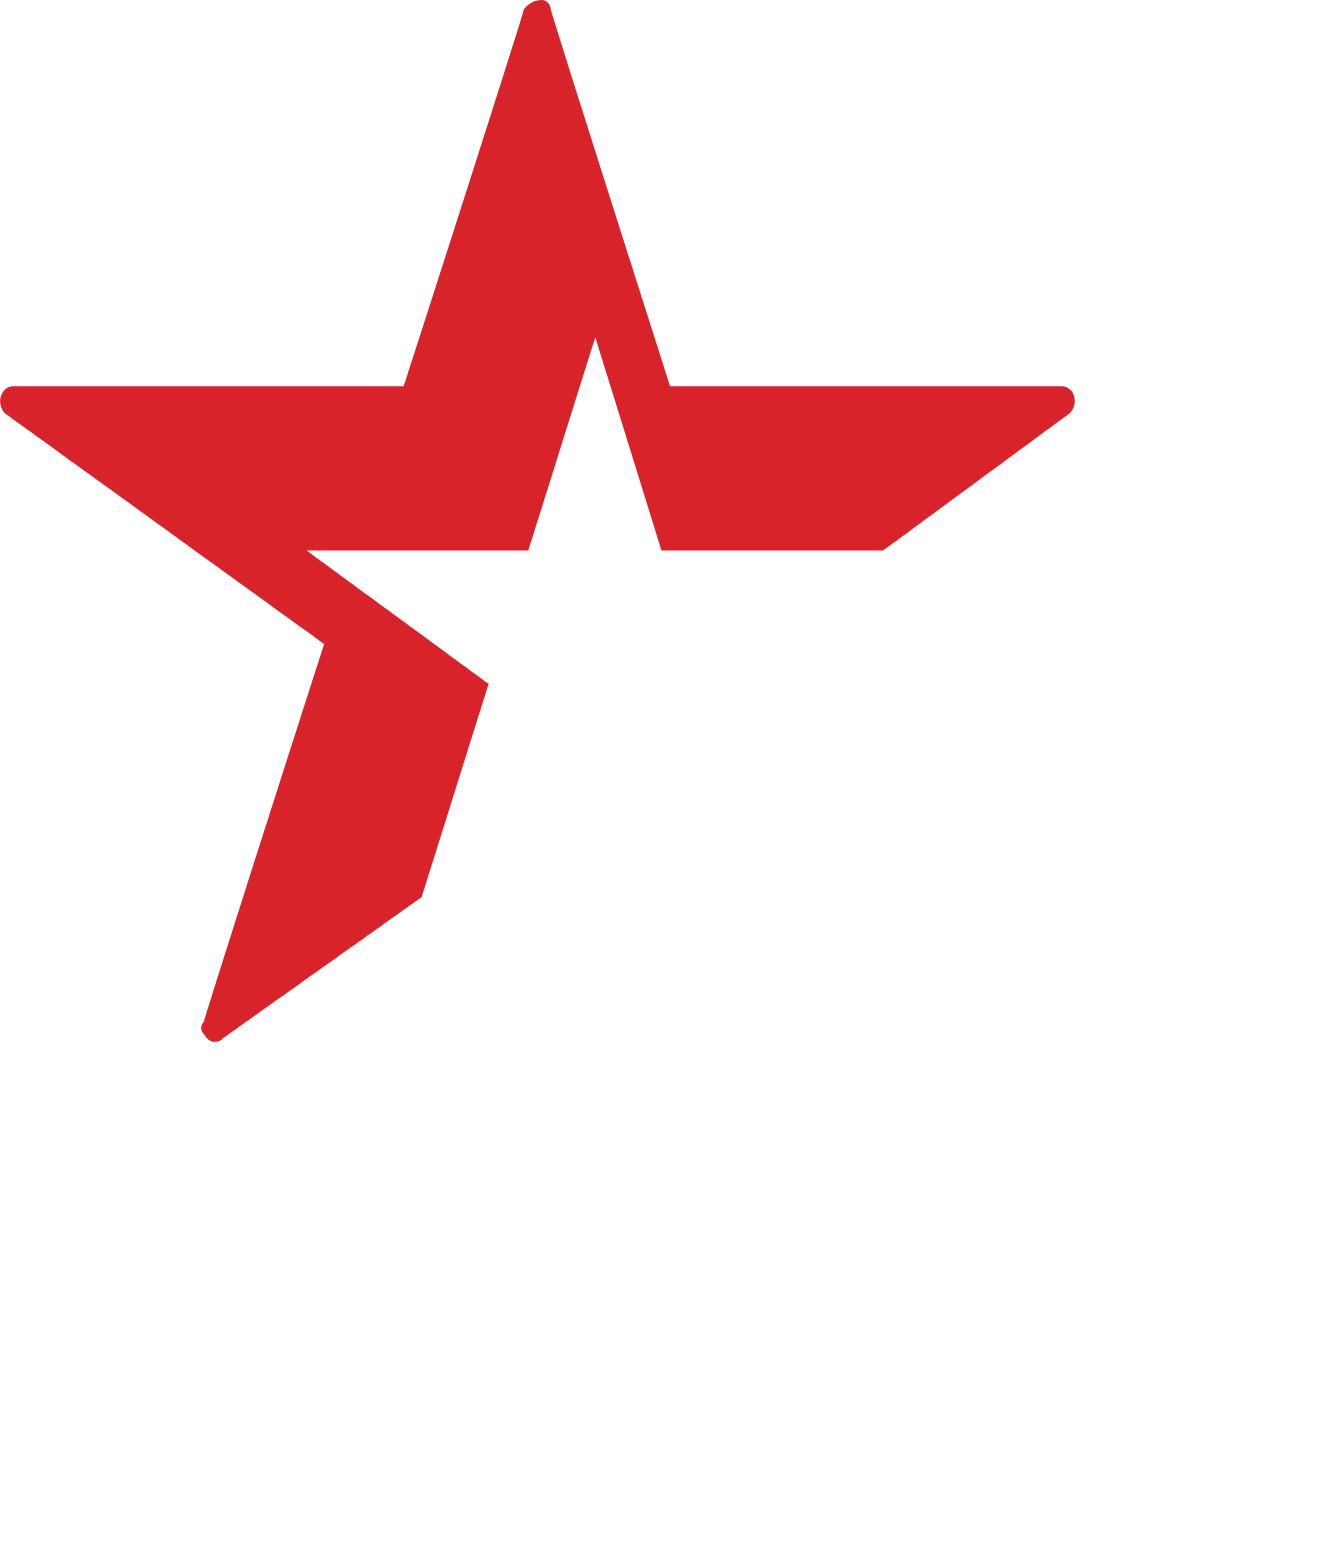 Heineken logo for dark backgrounds (transparent PNG)